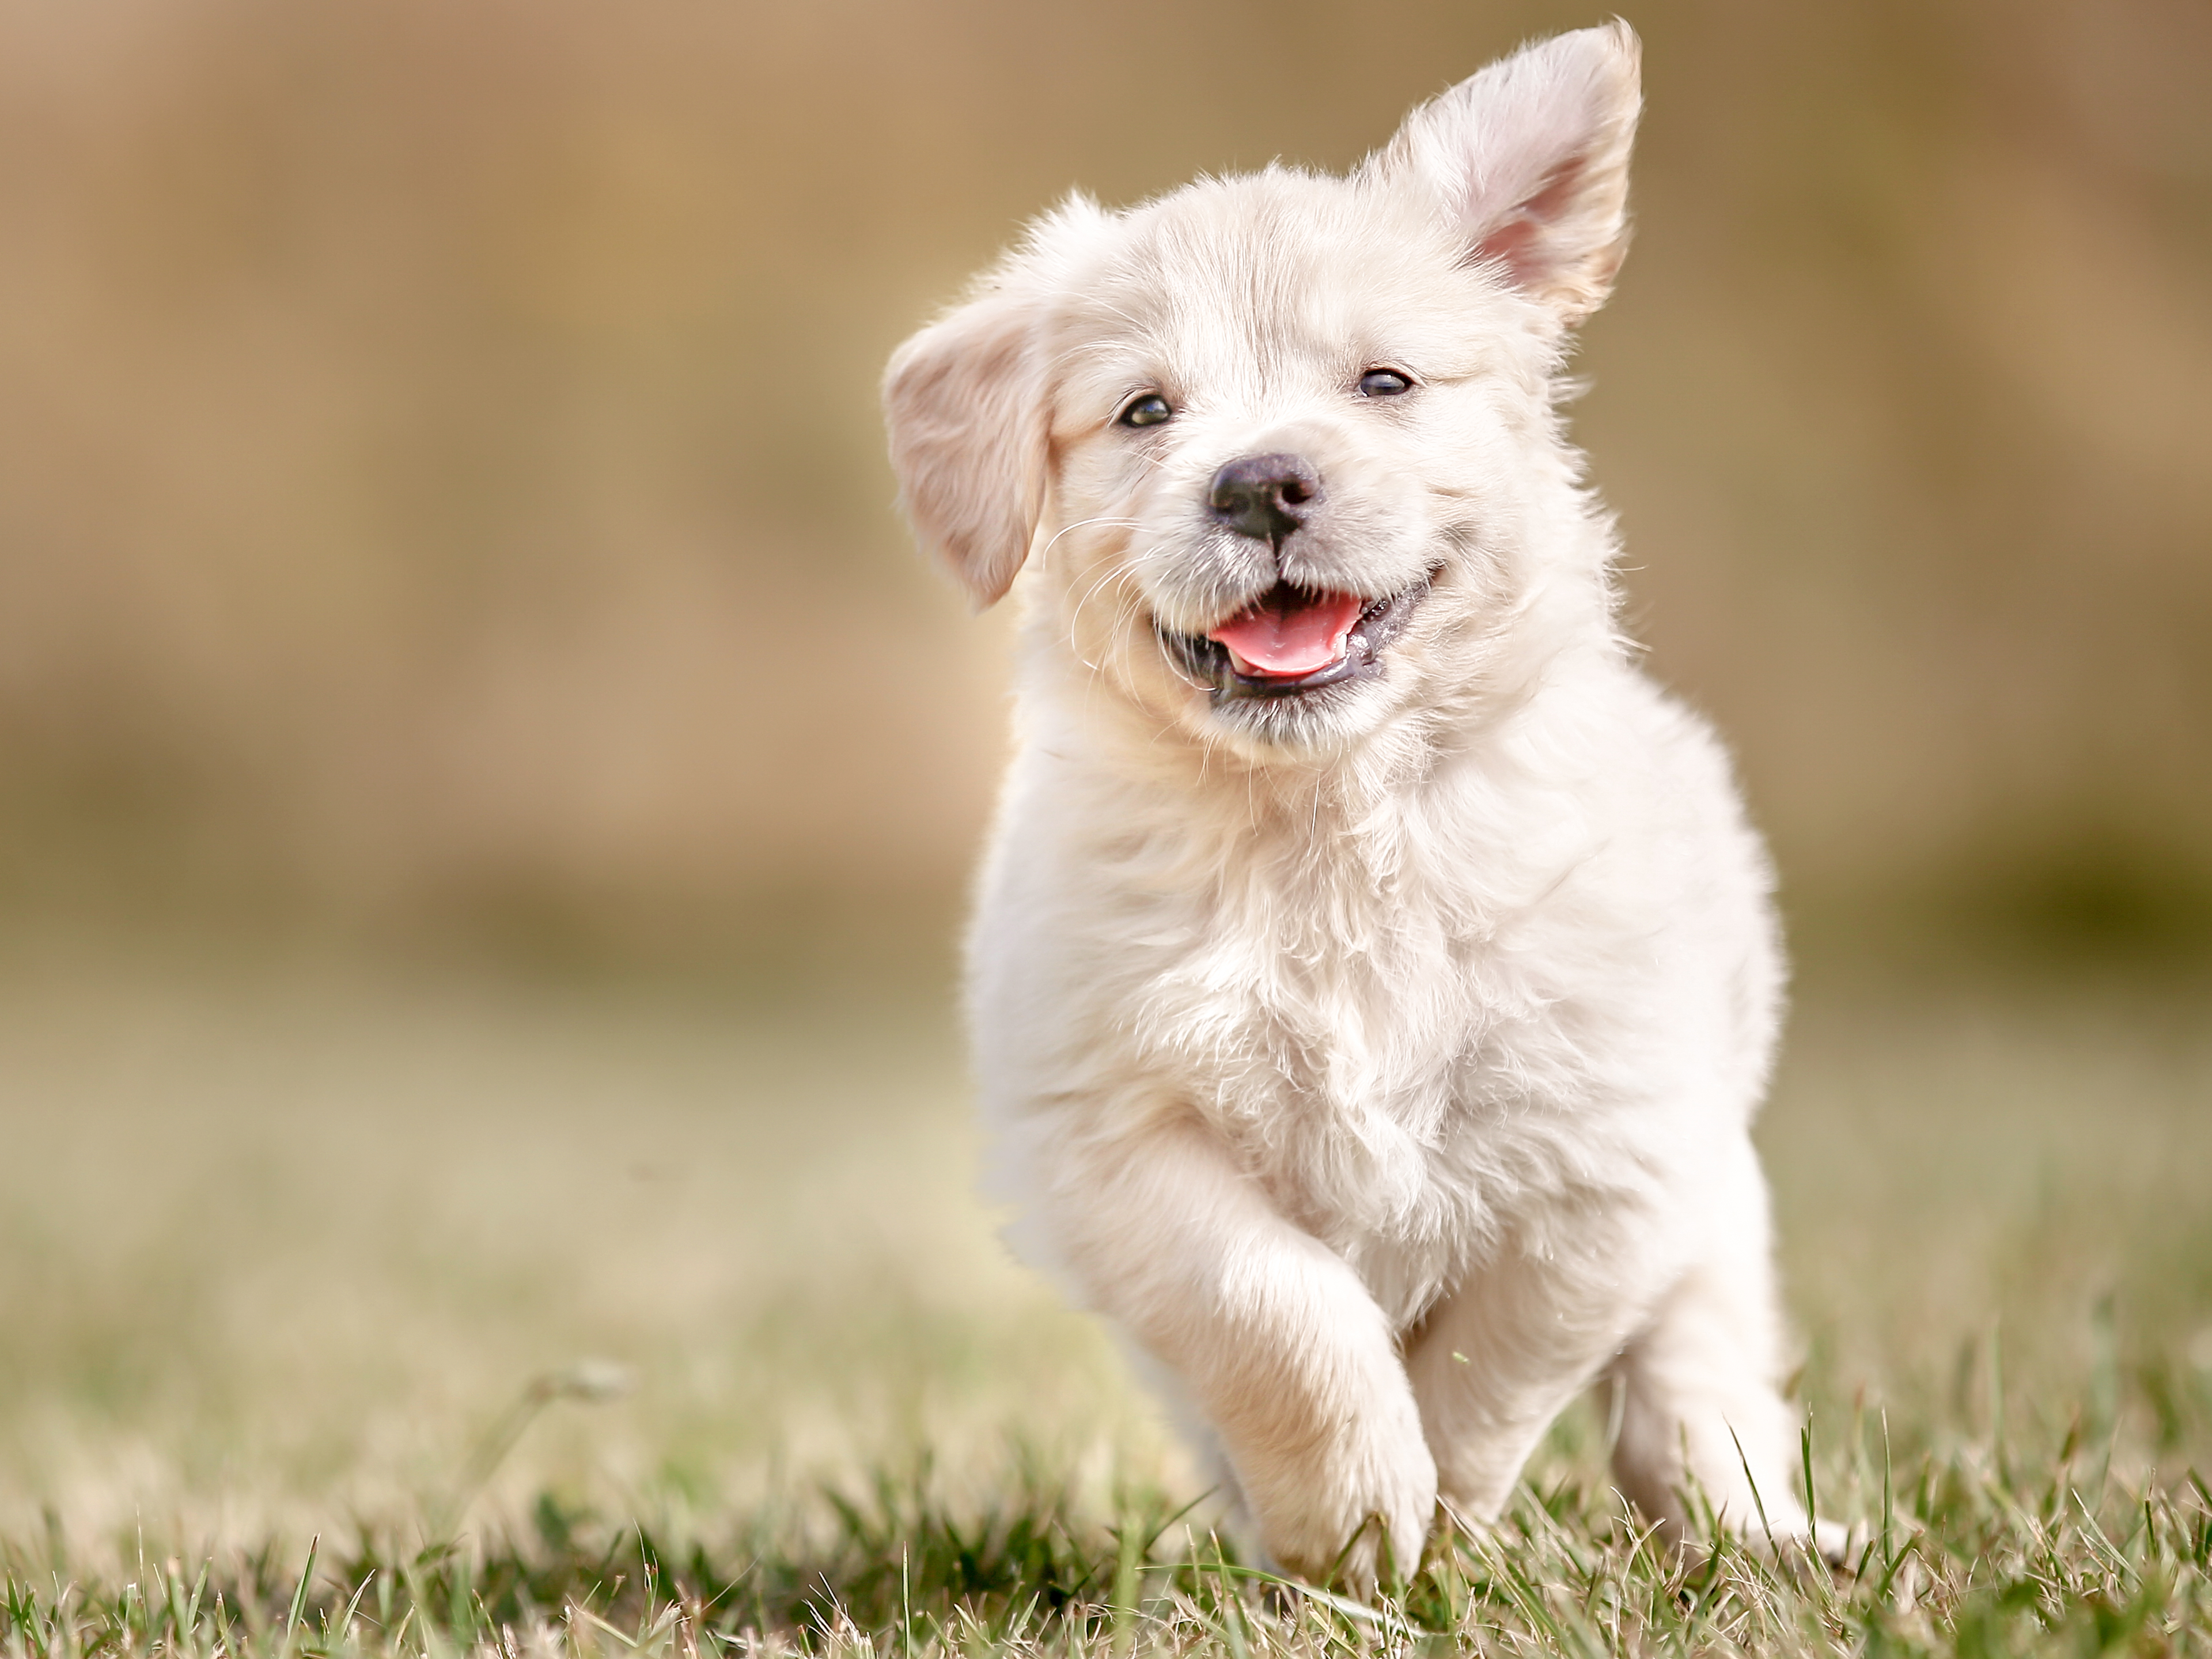 Golden Retriever puppy running outdoors in grass